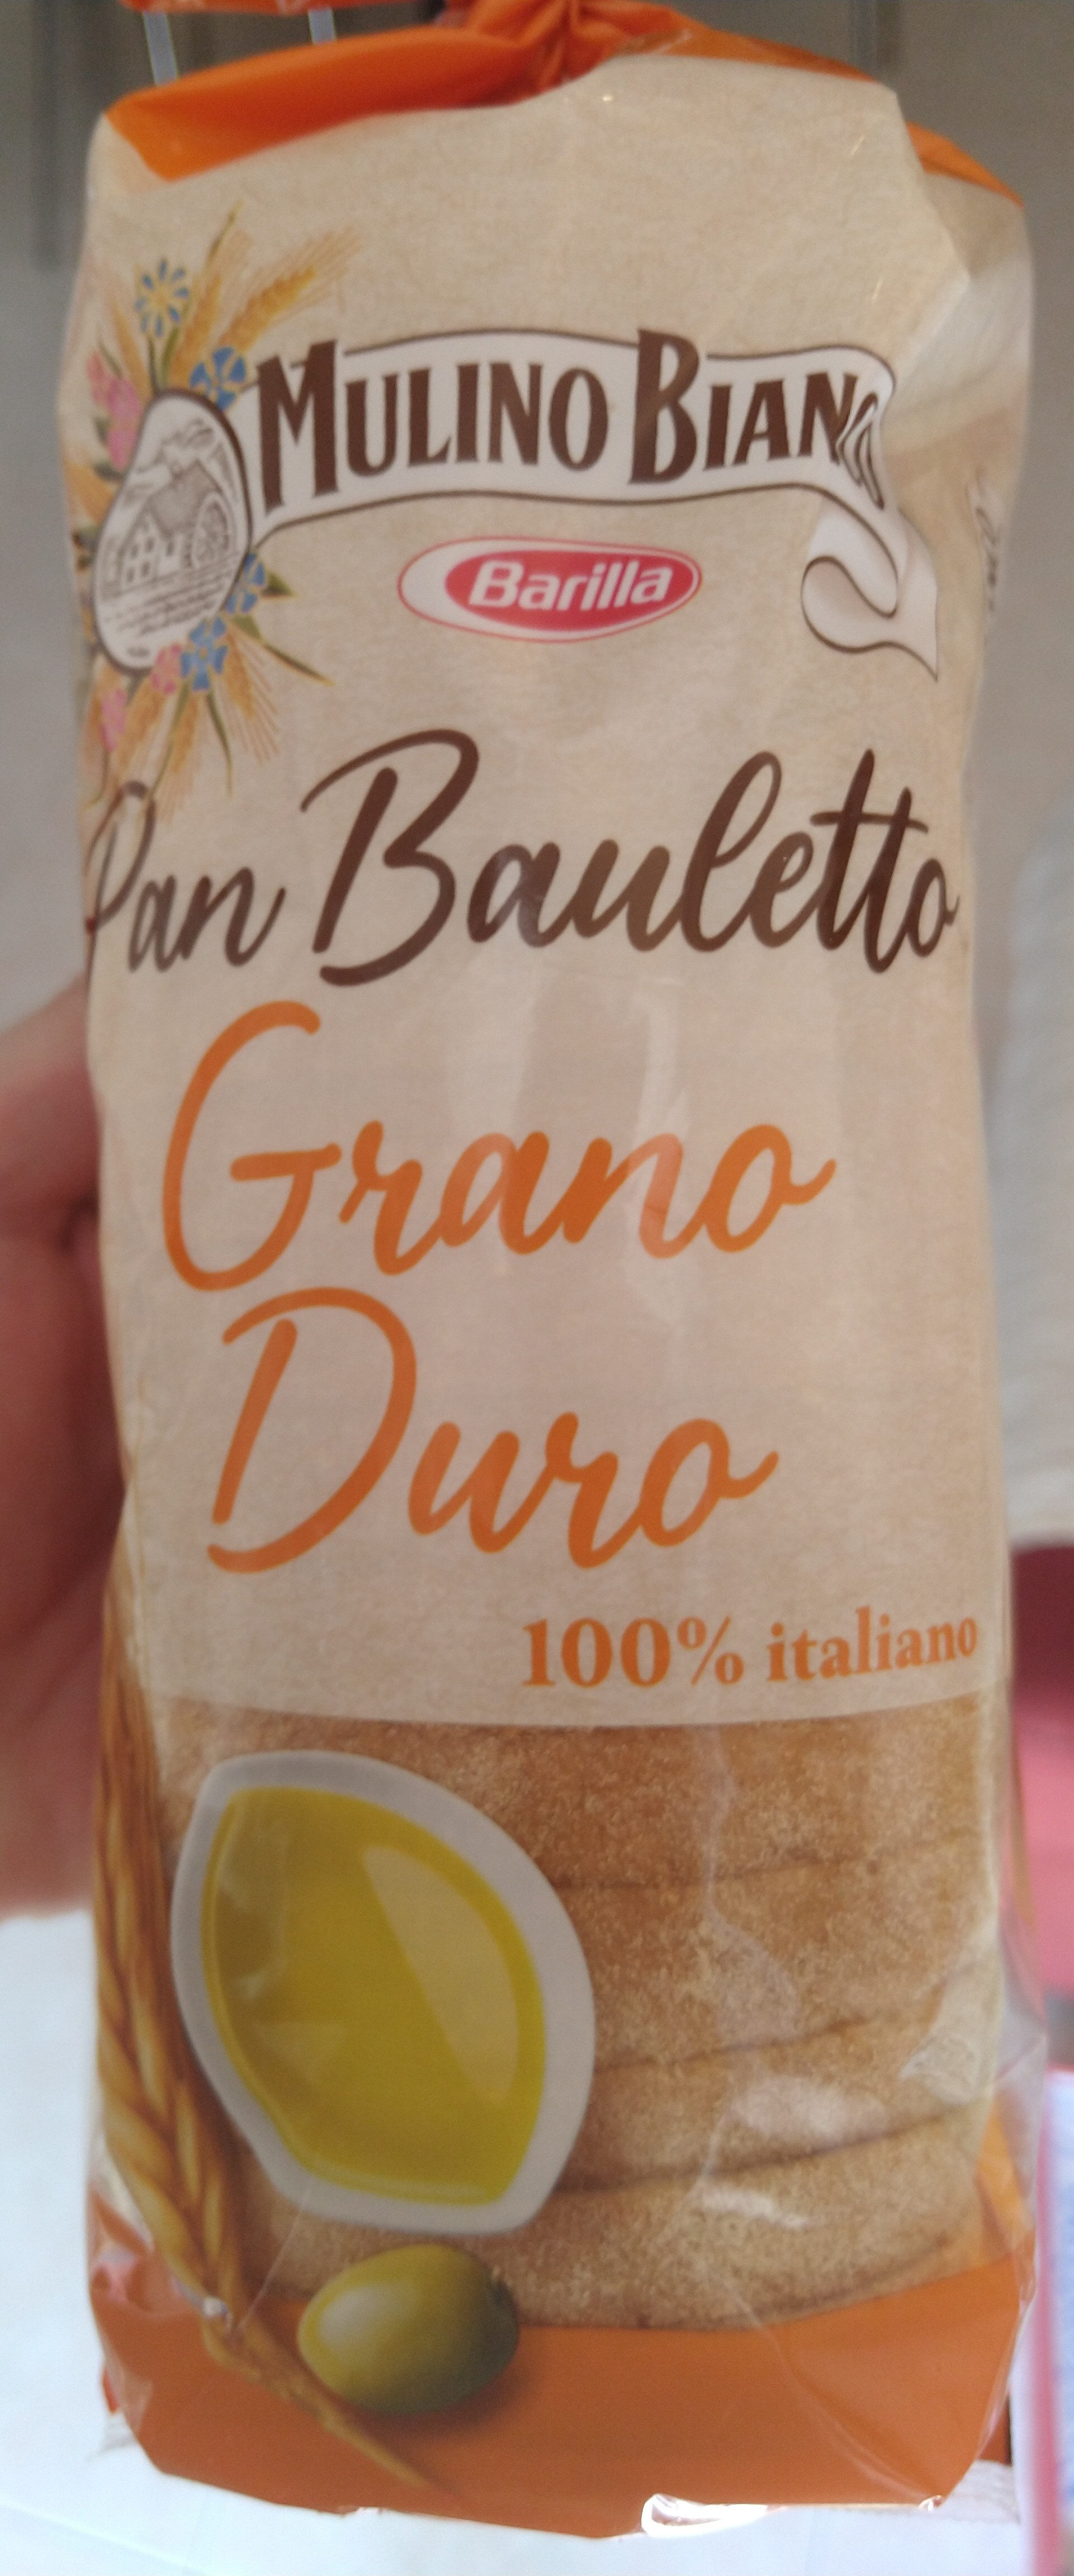 Pan Bauletto al Grano Duro - Product